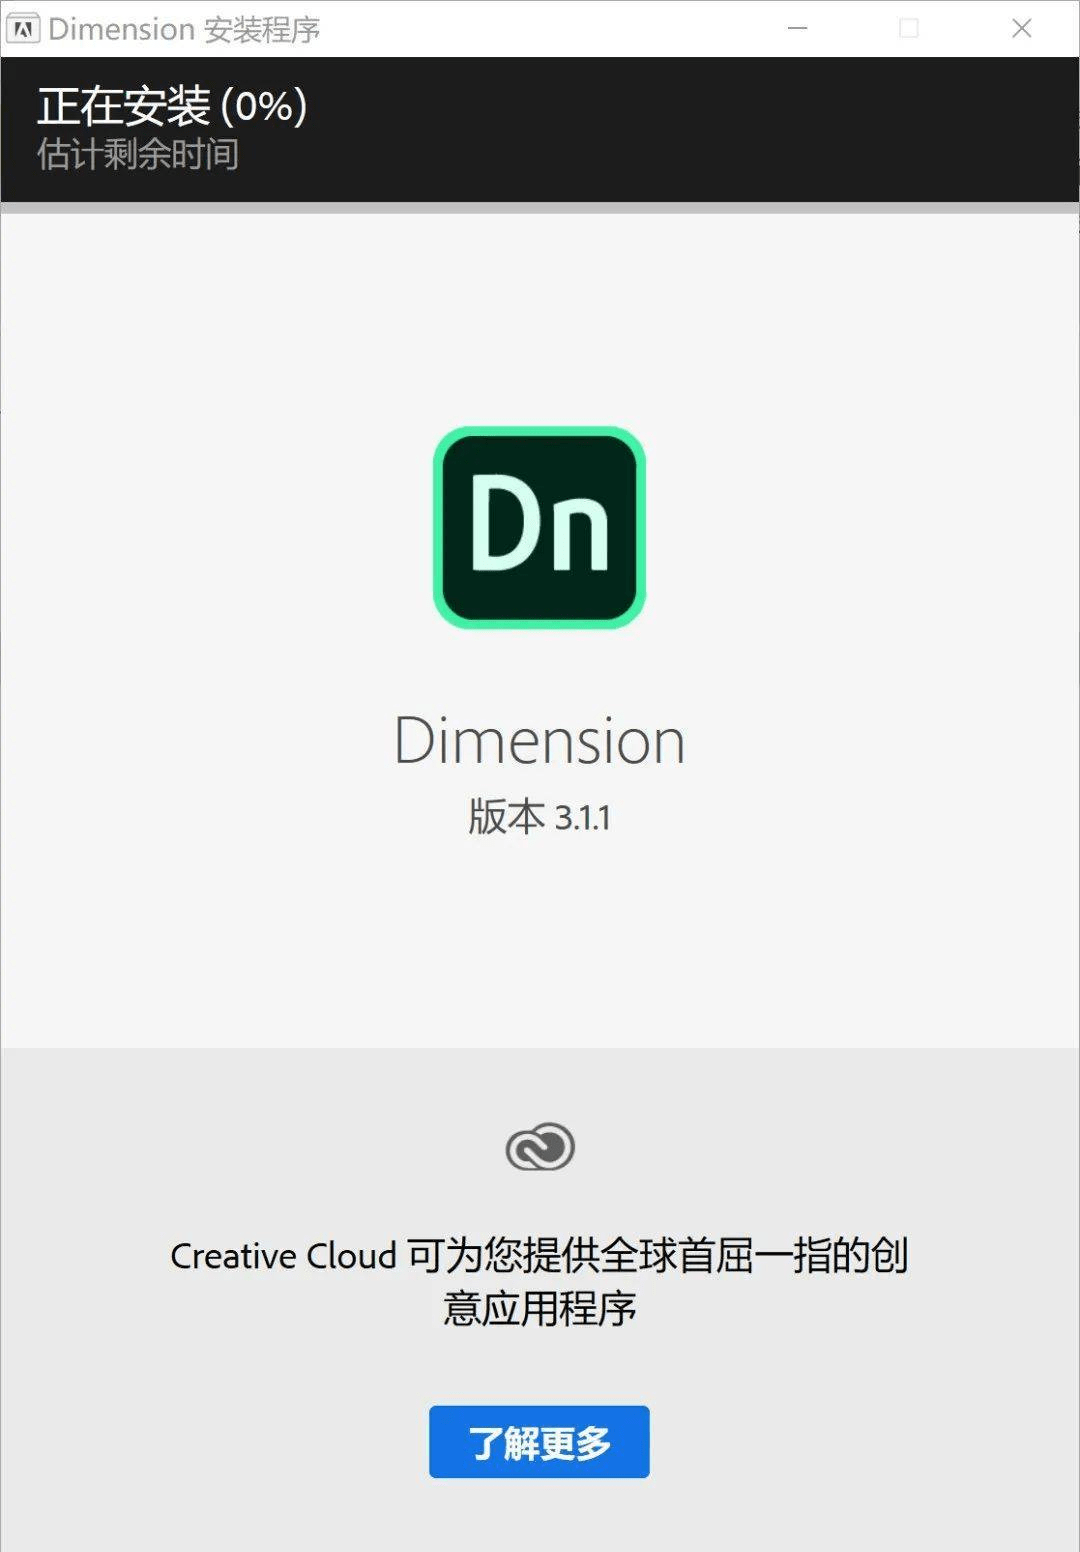 人渣下载免费中文版苹果:Adobe Dimension最新中文版安装激活教程 2020软件免费下载及安装-第5张图片-太平洋在线下载